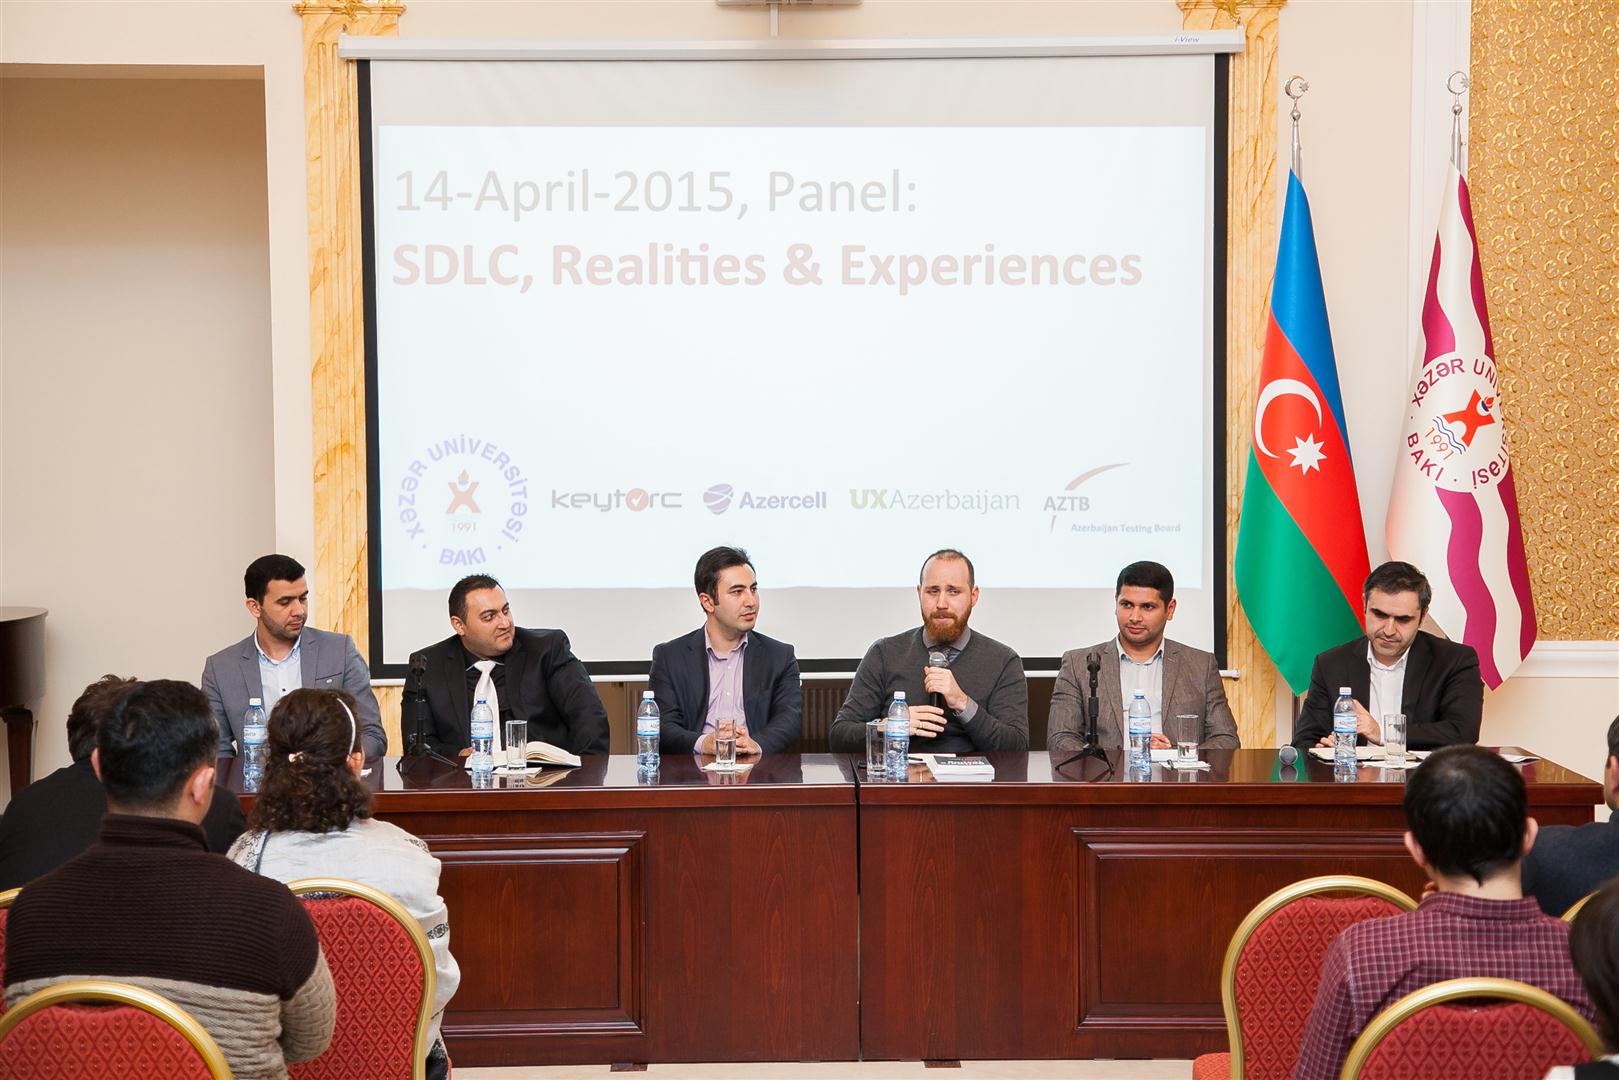 При активной поддержке Azercell в Азербайджане формируется сообщество User Experience